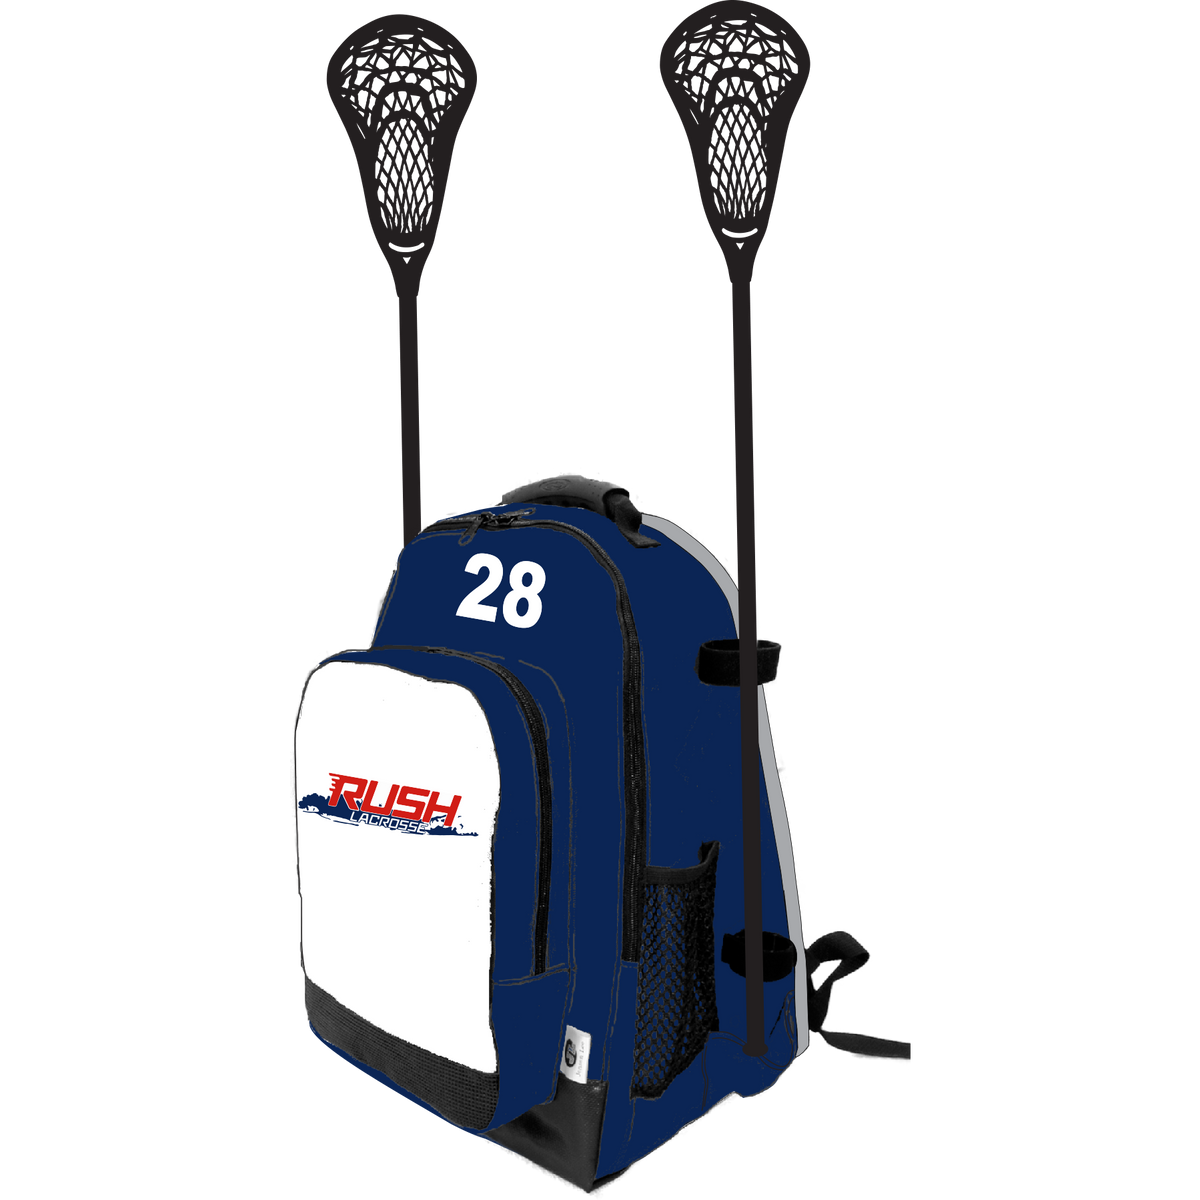 LI Rush Girl's Lacrosse Side Stick Holder Small Backpack